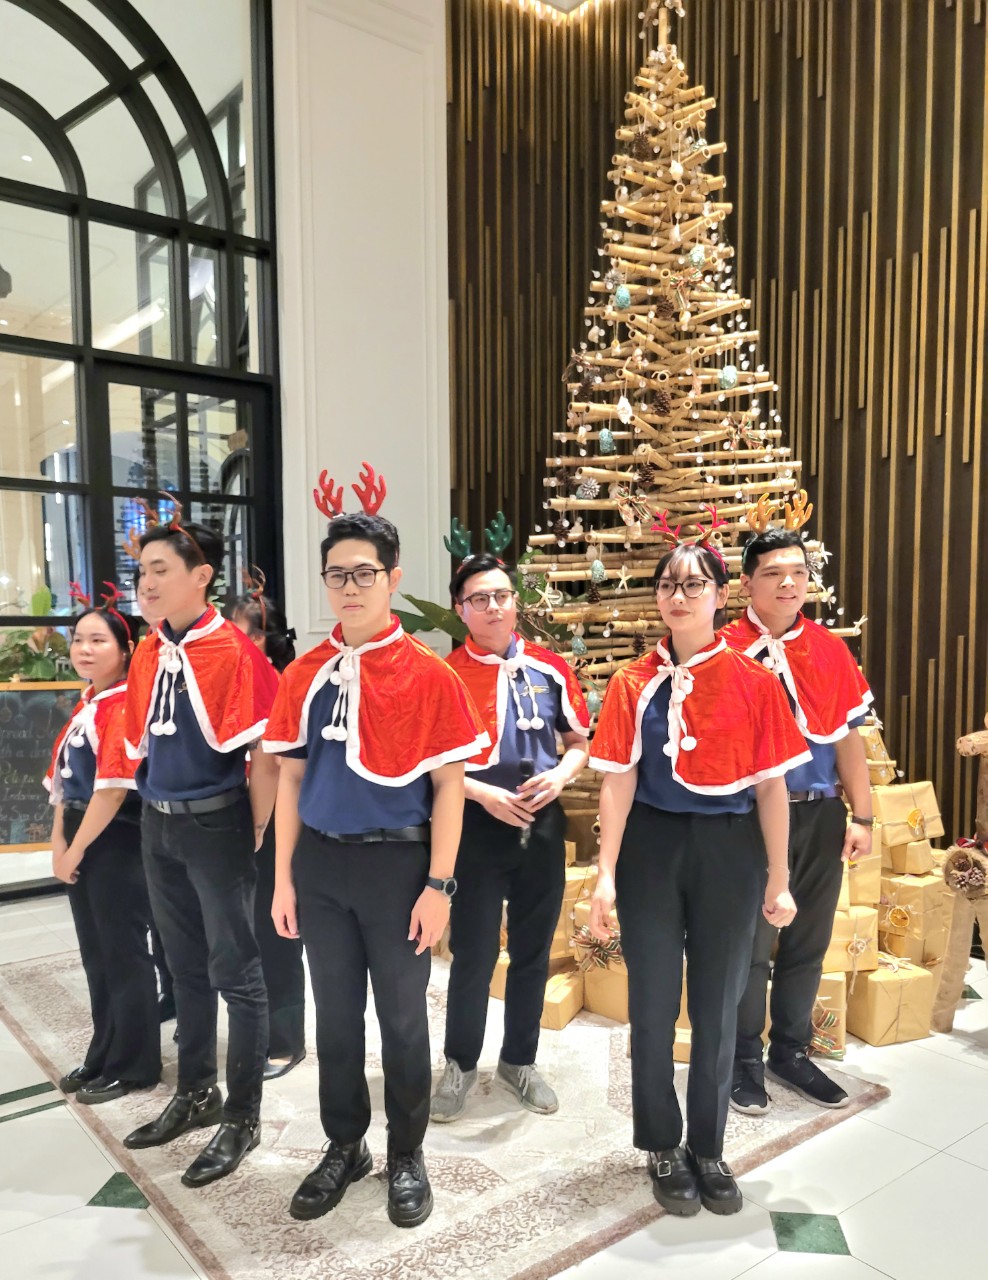 Dàn đồng ca của khách sạn hát mừng Giáng sinh.